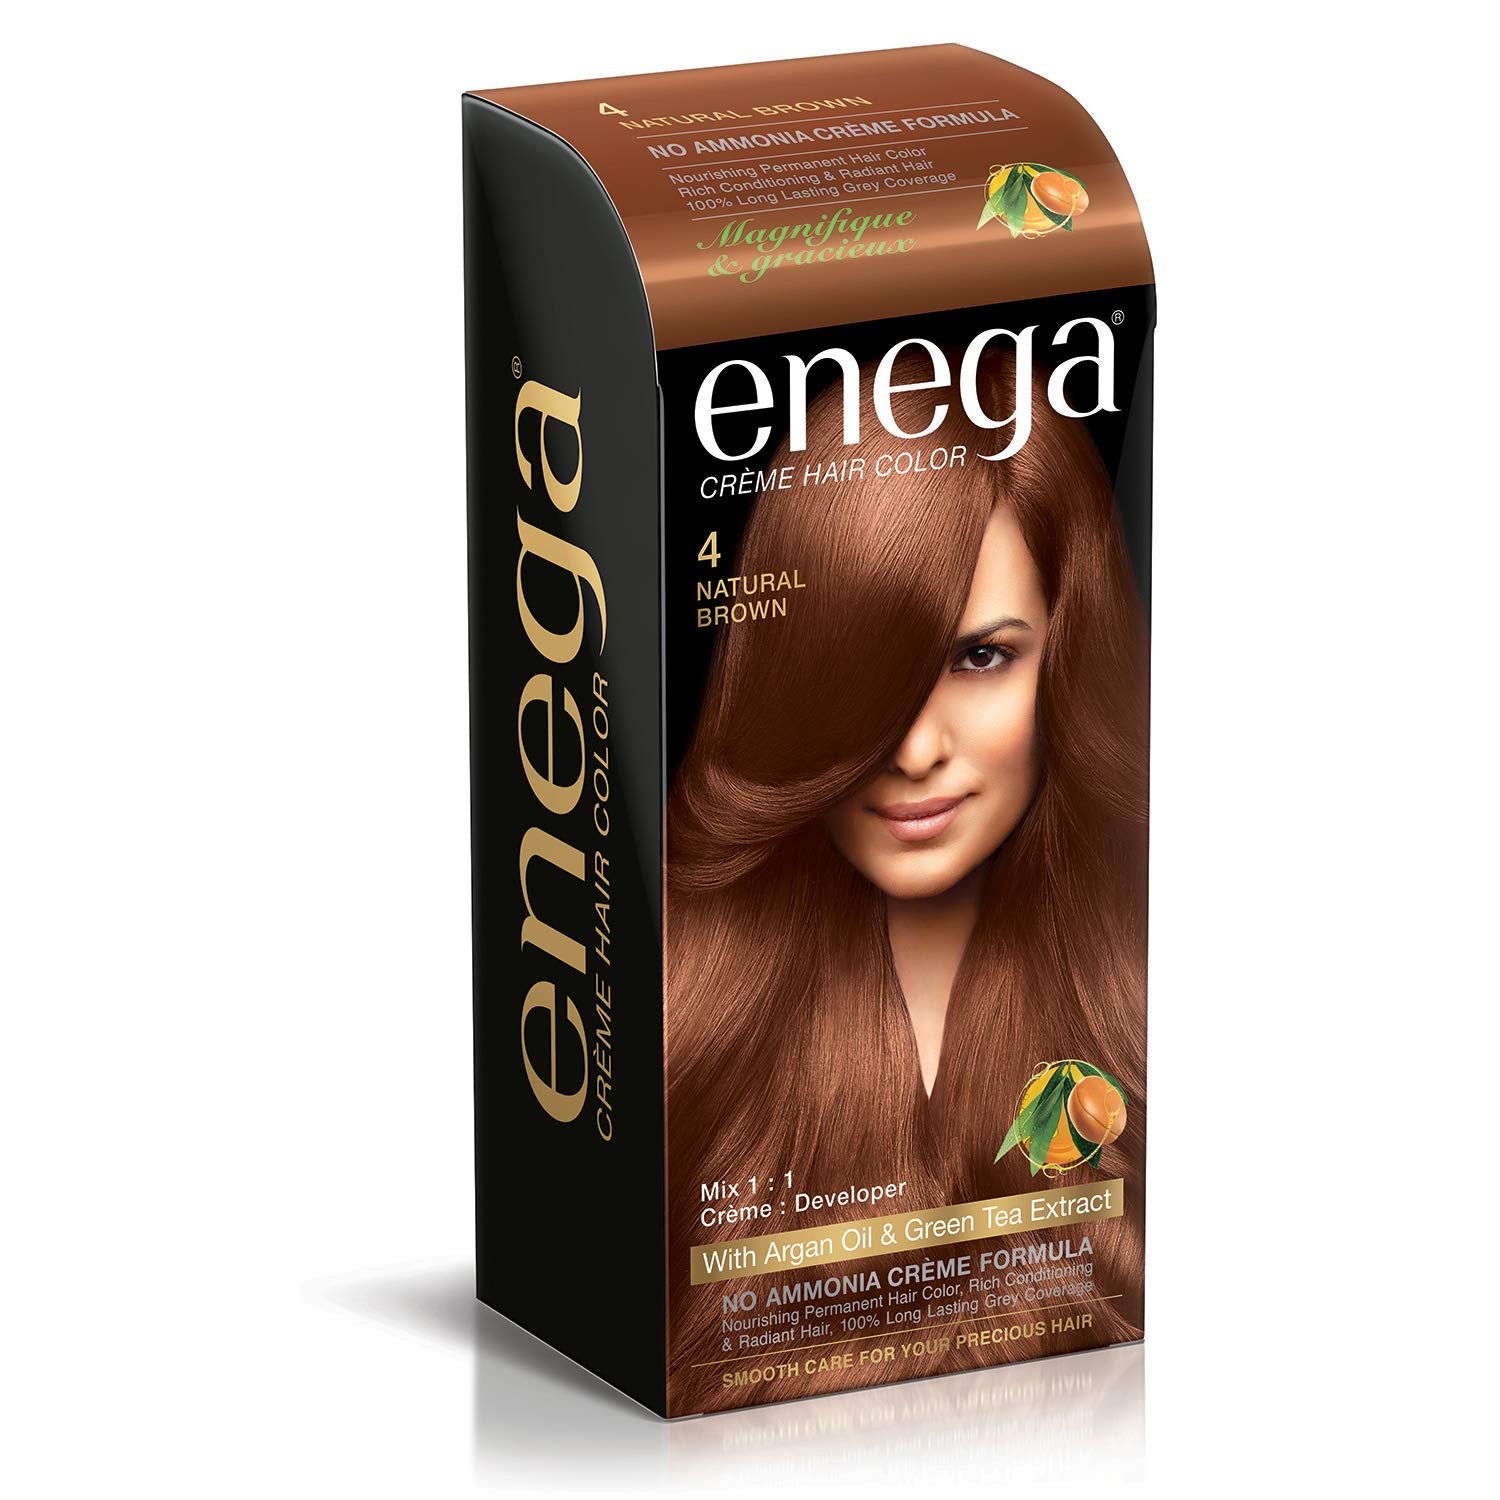 Enega creme hair color brilliance 4 natural brown